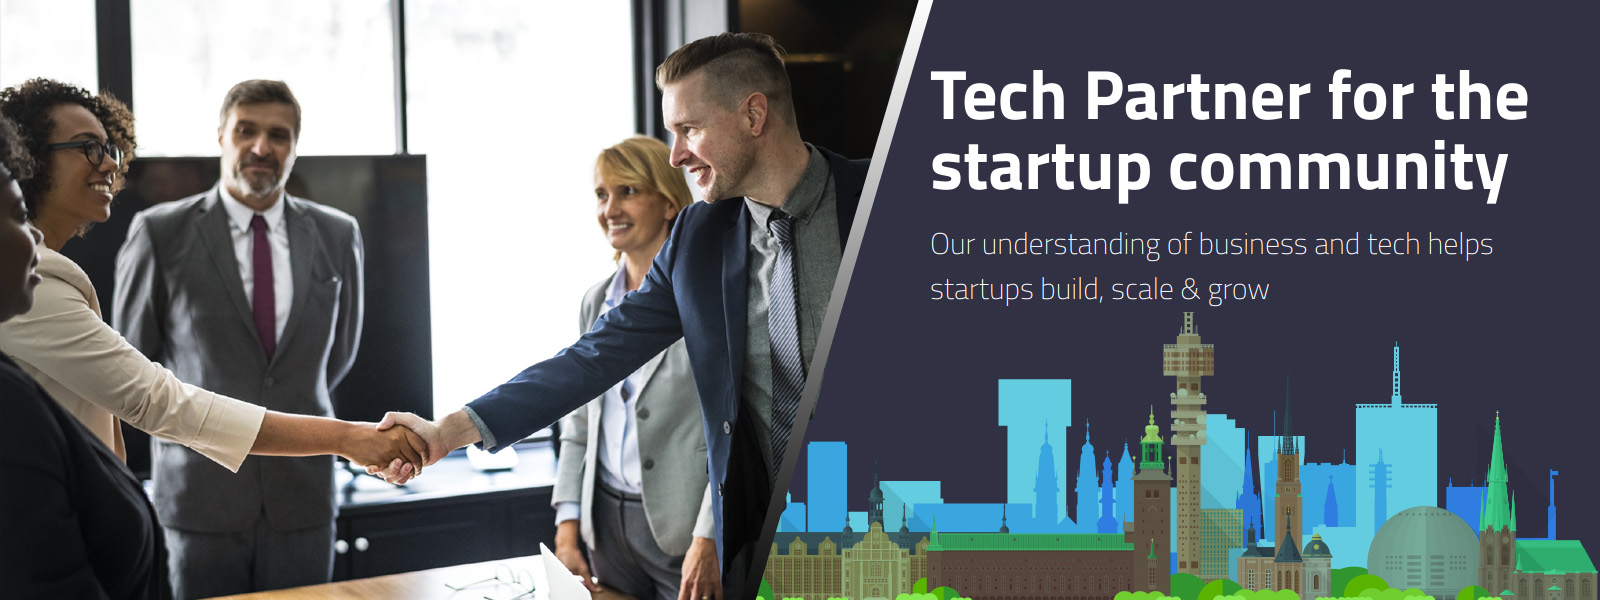 Technology Partner for Startup